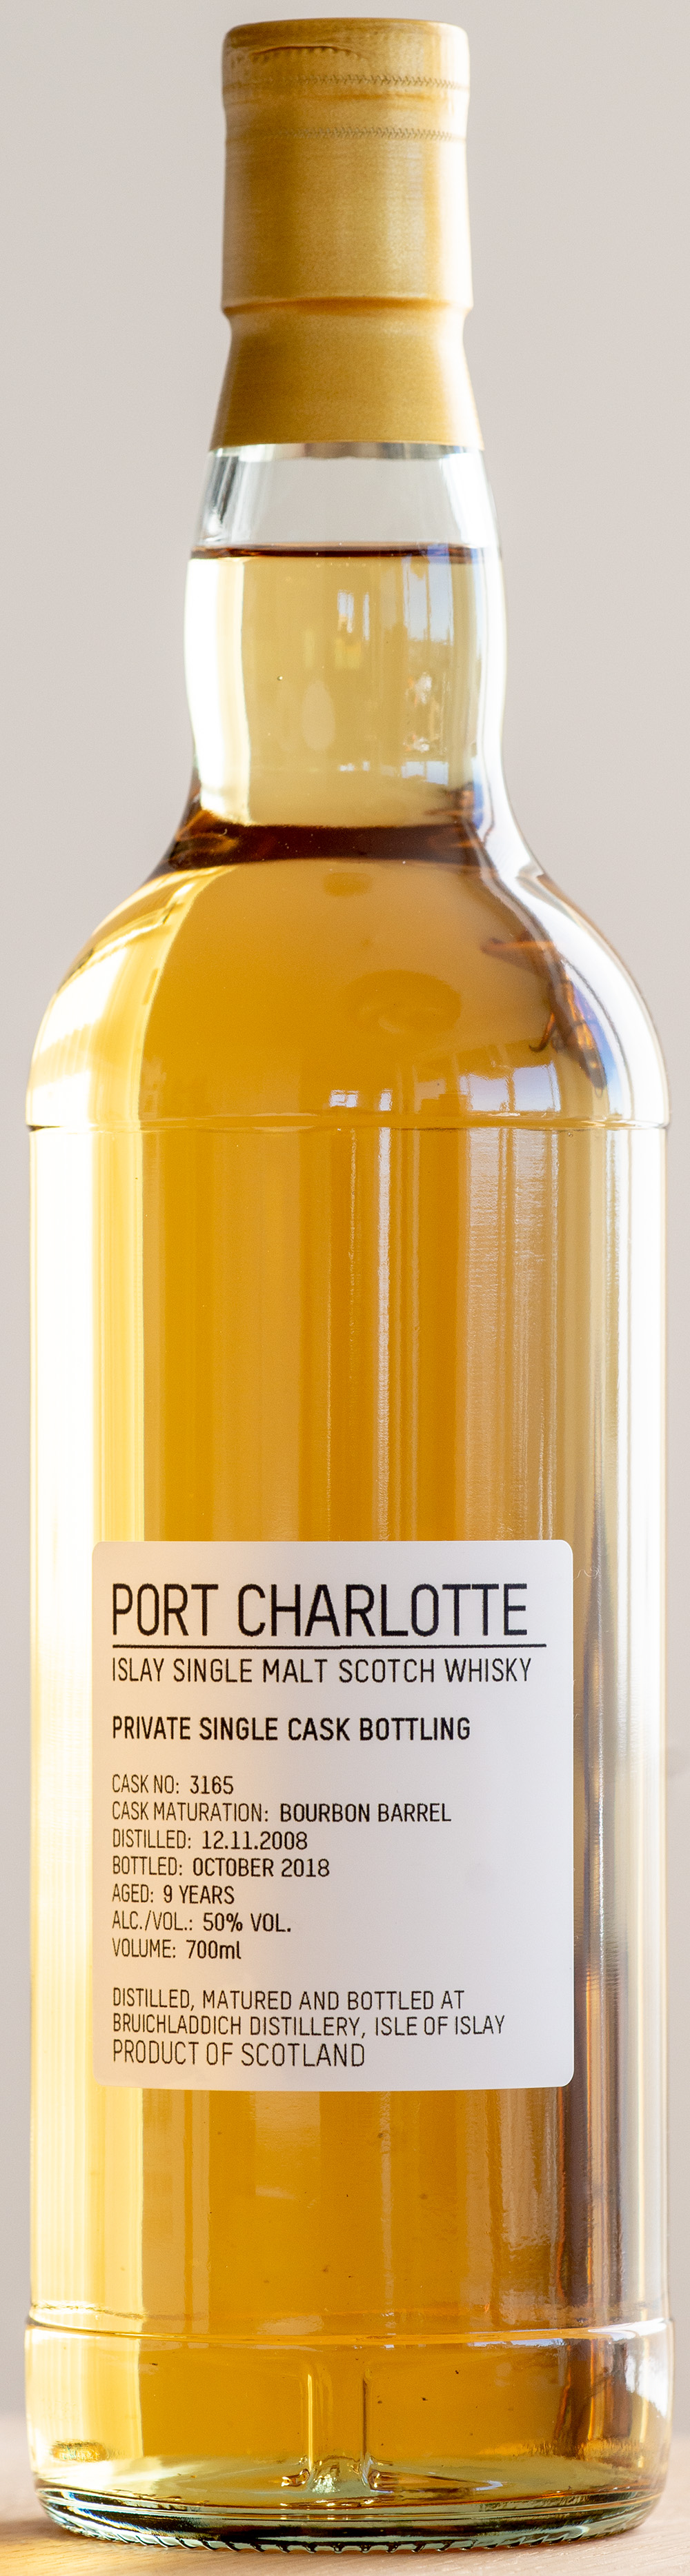 Billede: DSC_6636 - Port Charlotte Private Cask no 3165 (2008-2018) - bottle.jpg